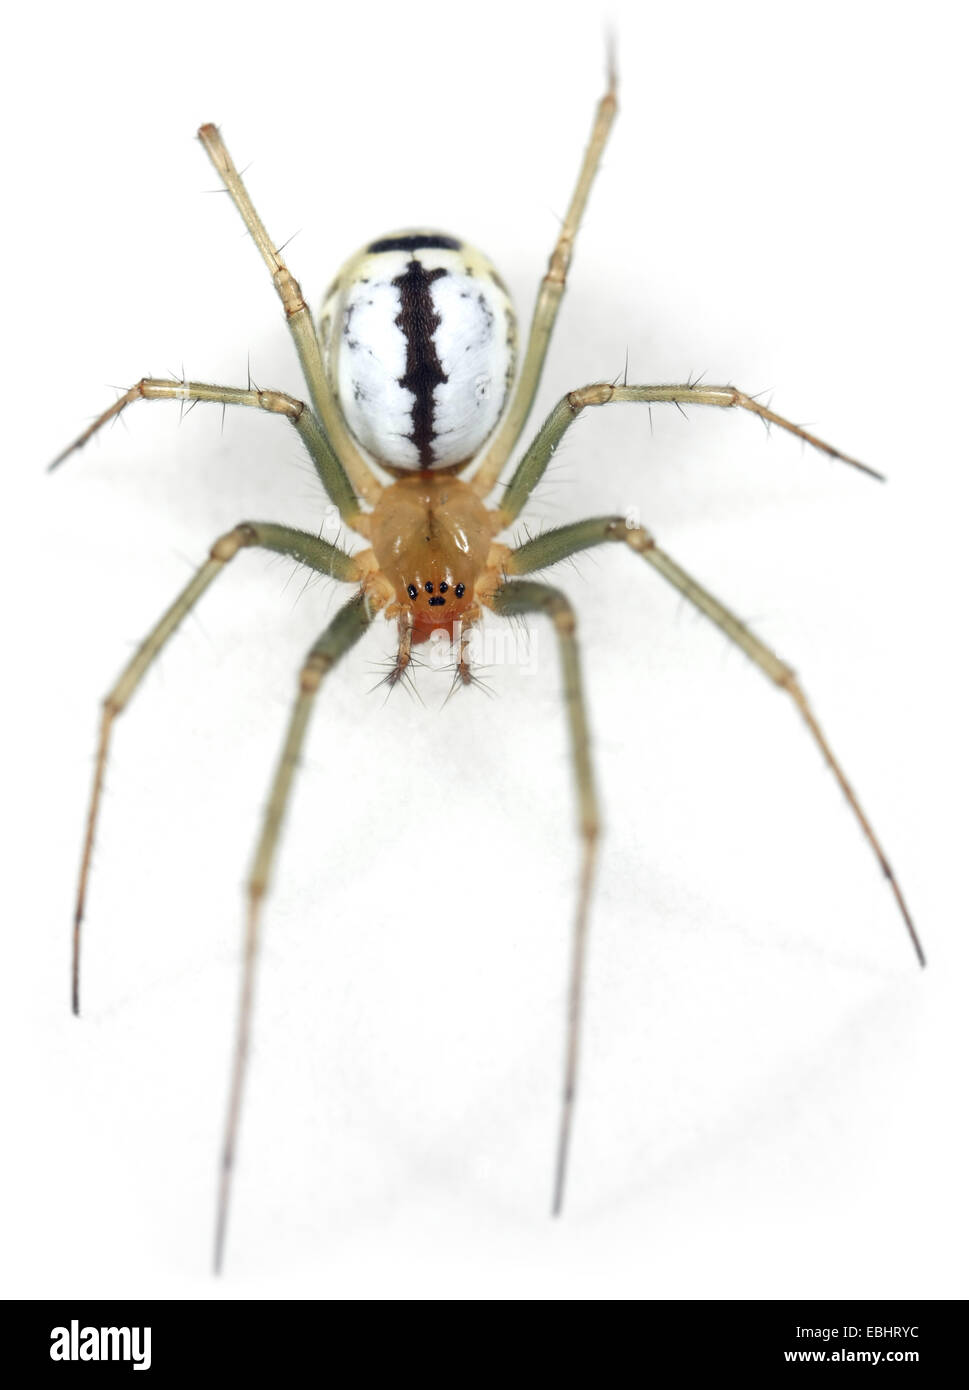 (Fermale Neriene emphana) araignée sur un fond blanc, une partie de la famille des Amphinectidae, la Sheetweb weavers. Banque D'Images